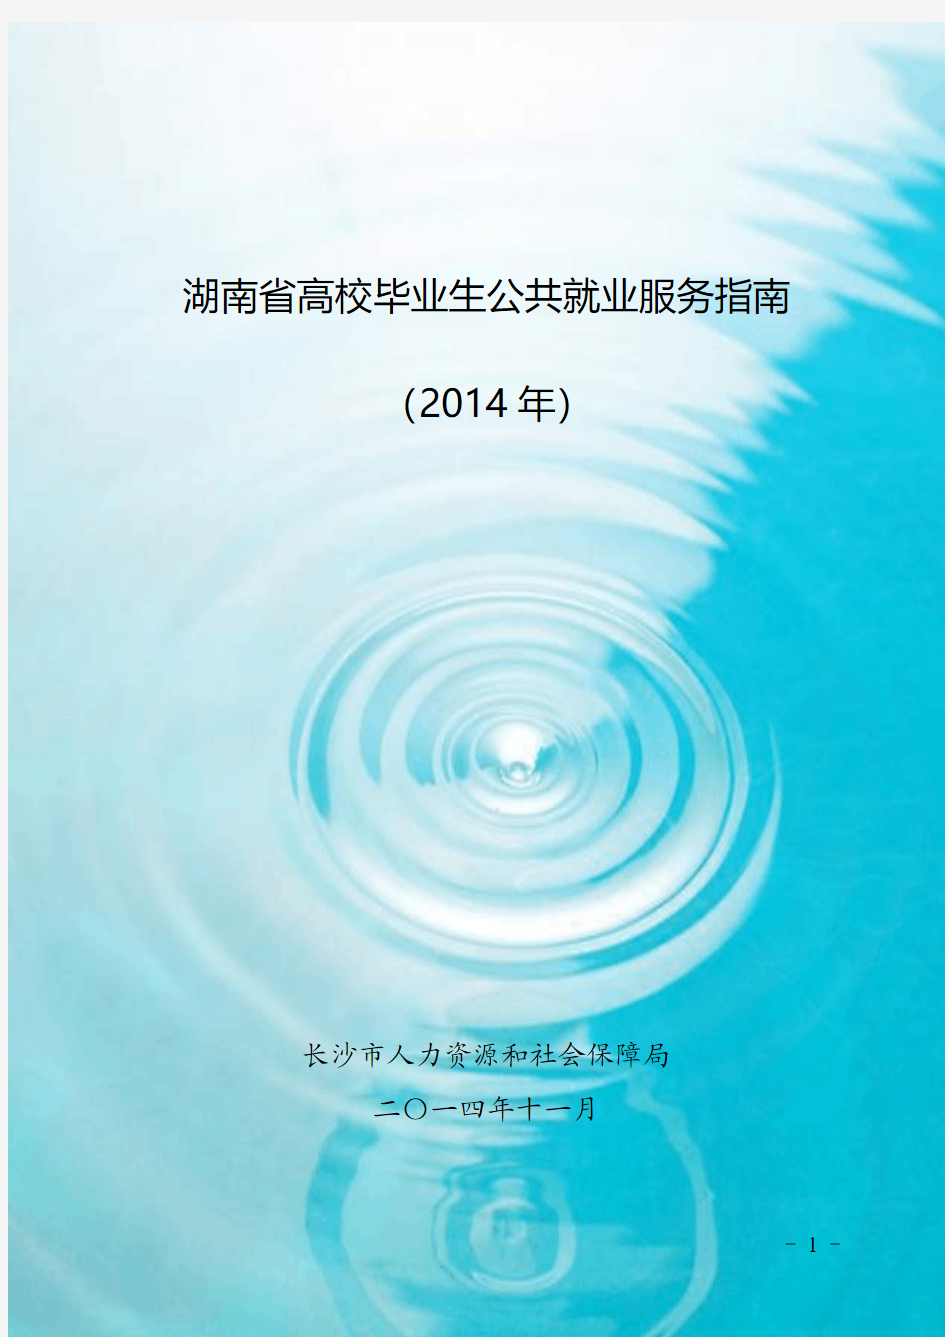 湖南省高校毕业生公共就业服务指南(2014年)确定